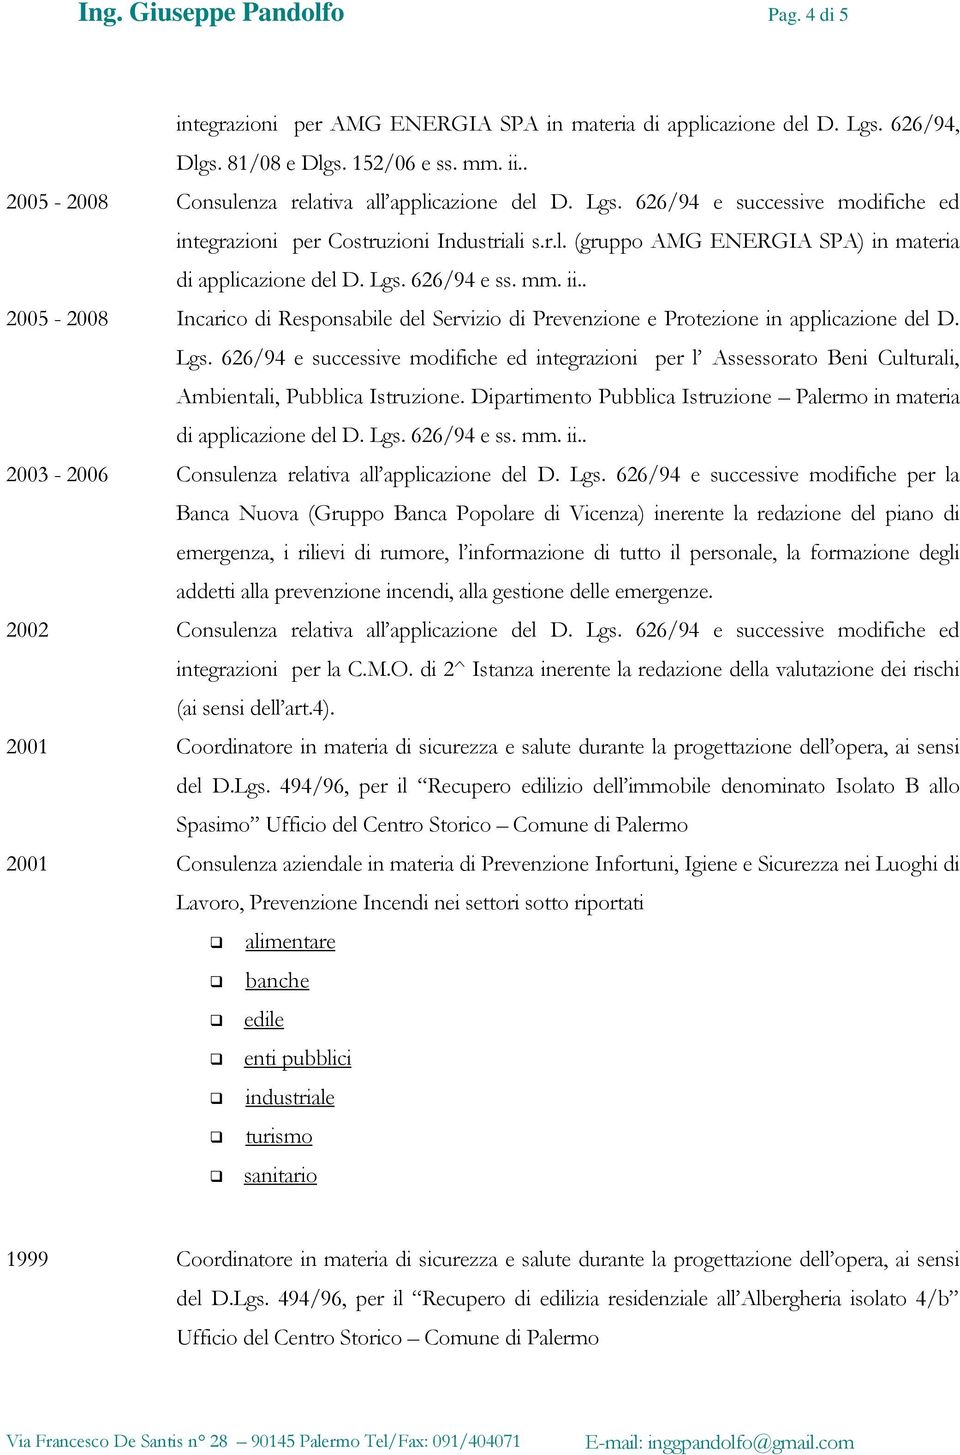 Lgs. 626/94 e ss. mm. ii.. 2005-2008 Incarico di Responsabile del Servizio di Prevenzione e Protezione in applicazione del D. Lgs.